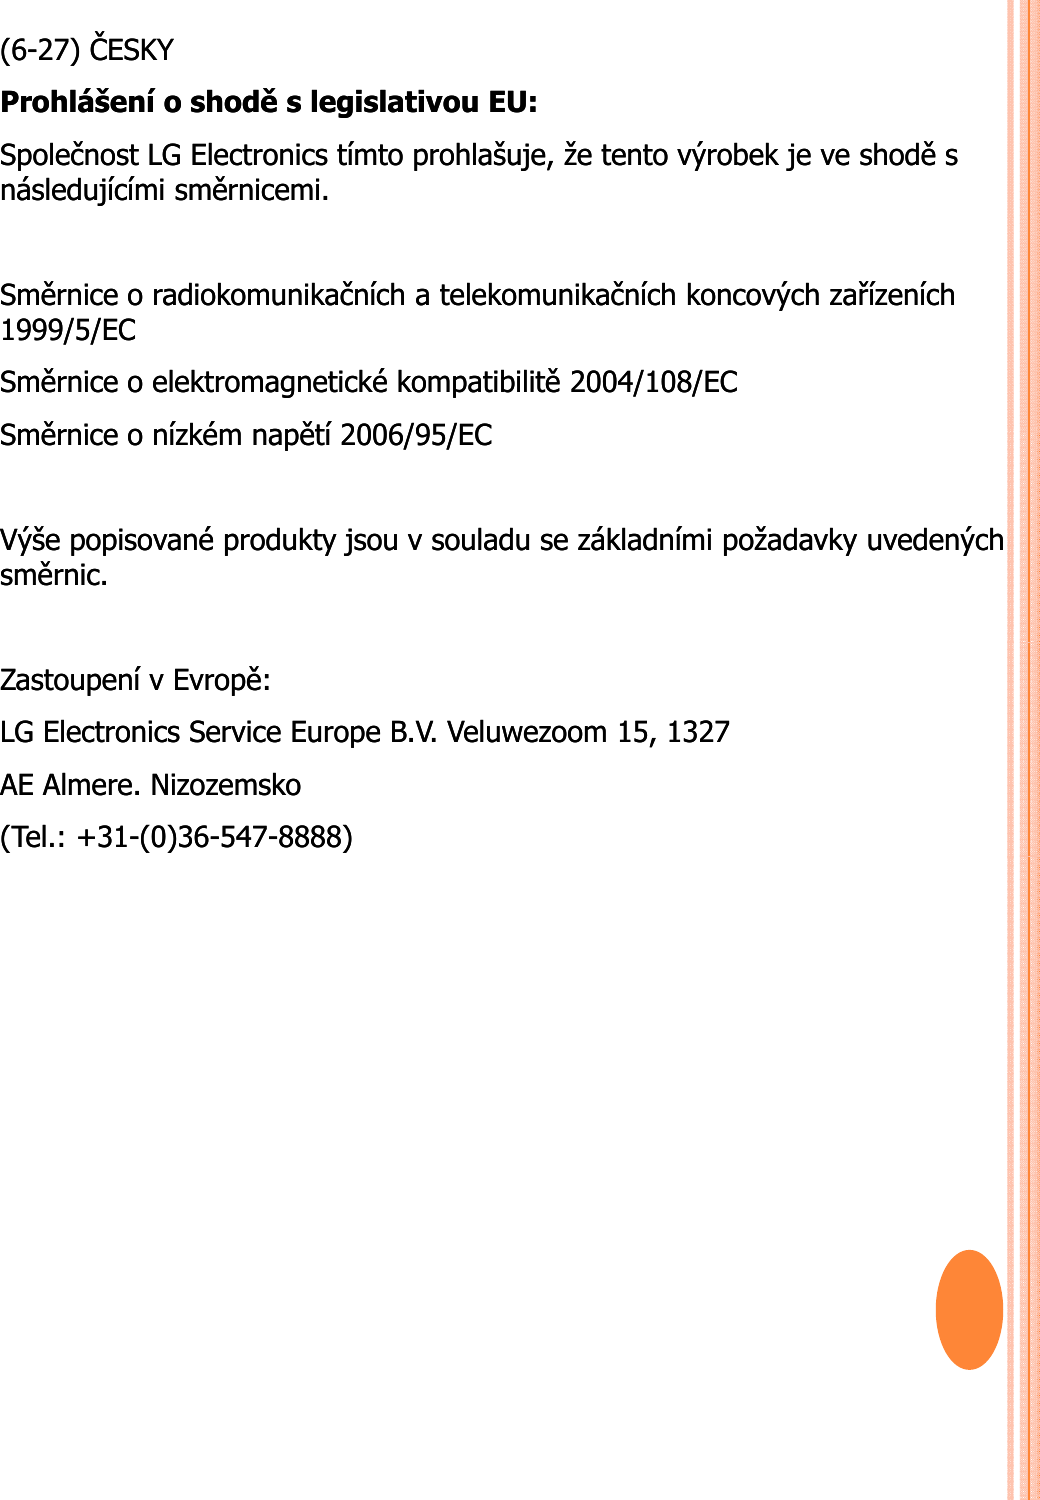 (6(6--27) 27) ČESKYČESKYProhlášeníProhlášení o o shoděshoděs s legislativoulegislativou EU: EU: SpolečnostSpolečnost LG Electronics LG Electronics tímtotímto prohlašujeprohlašuje, , žeže tentotento výrobekvýrobek je je veve shoděshoděs s následujícíminásledujícími směrnicemisměrnicemi. . SměrniceSměrnice o o radiokomunikačníchradiokomunikačních a a telekomunikačníchtelekomunikačních koncovýchkoncových zařízeníchzařízeních1999/5/EC 1999/5/EC SměrniceSměrnice o o elektromagnetickéelektromagnetické kompatibilitěkompatibilitě2004/108/EC 2004/108/EC SěiS ěiíkéíkéětíětí2006/95/EC2006/95/ECSměrniceSměrnice o o nízkémnízkémnapětínapětí2006/95/EC 2006/95/EC VýšeVýše popisovanépopisované produktyprodukty jsoujsou v v souladusouladu se se základnímizákladními požadavkypožadavky uvedenýchuvedenýchsměrnicsměrnic. . ZastoupeníZastoupení v v EvropěEvropě: : LG Electronics Service Europe B.V. LG Electronics Service Europe B.V. VeluwezoomVeluwezoom 15, 1327 15, 1327 AE AE AlmereAlmere. . NizozemskoNizozemsko(Tel.: +31(Tel.: +31--(0)36(0)36--547547--8888)8888)